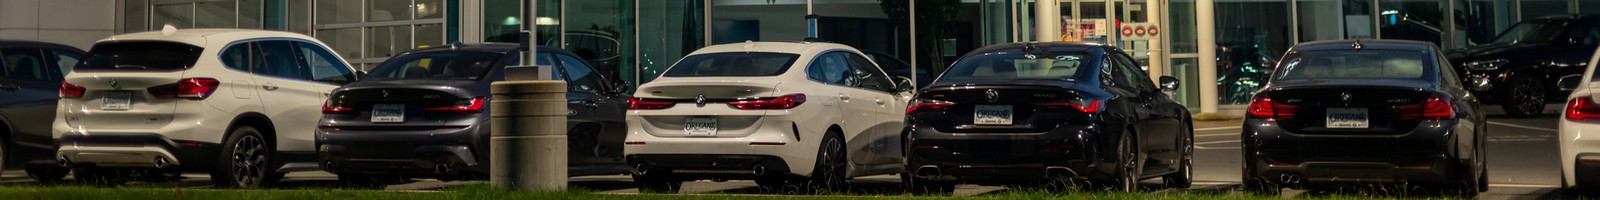 BMW simplifie sa nomenclature : fin du “i” pour les modèles essence